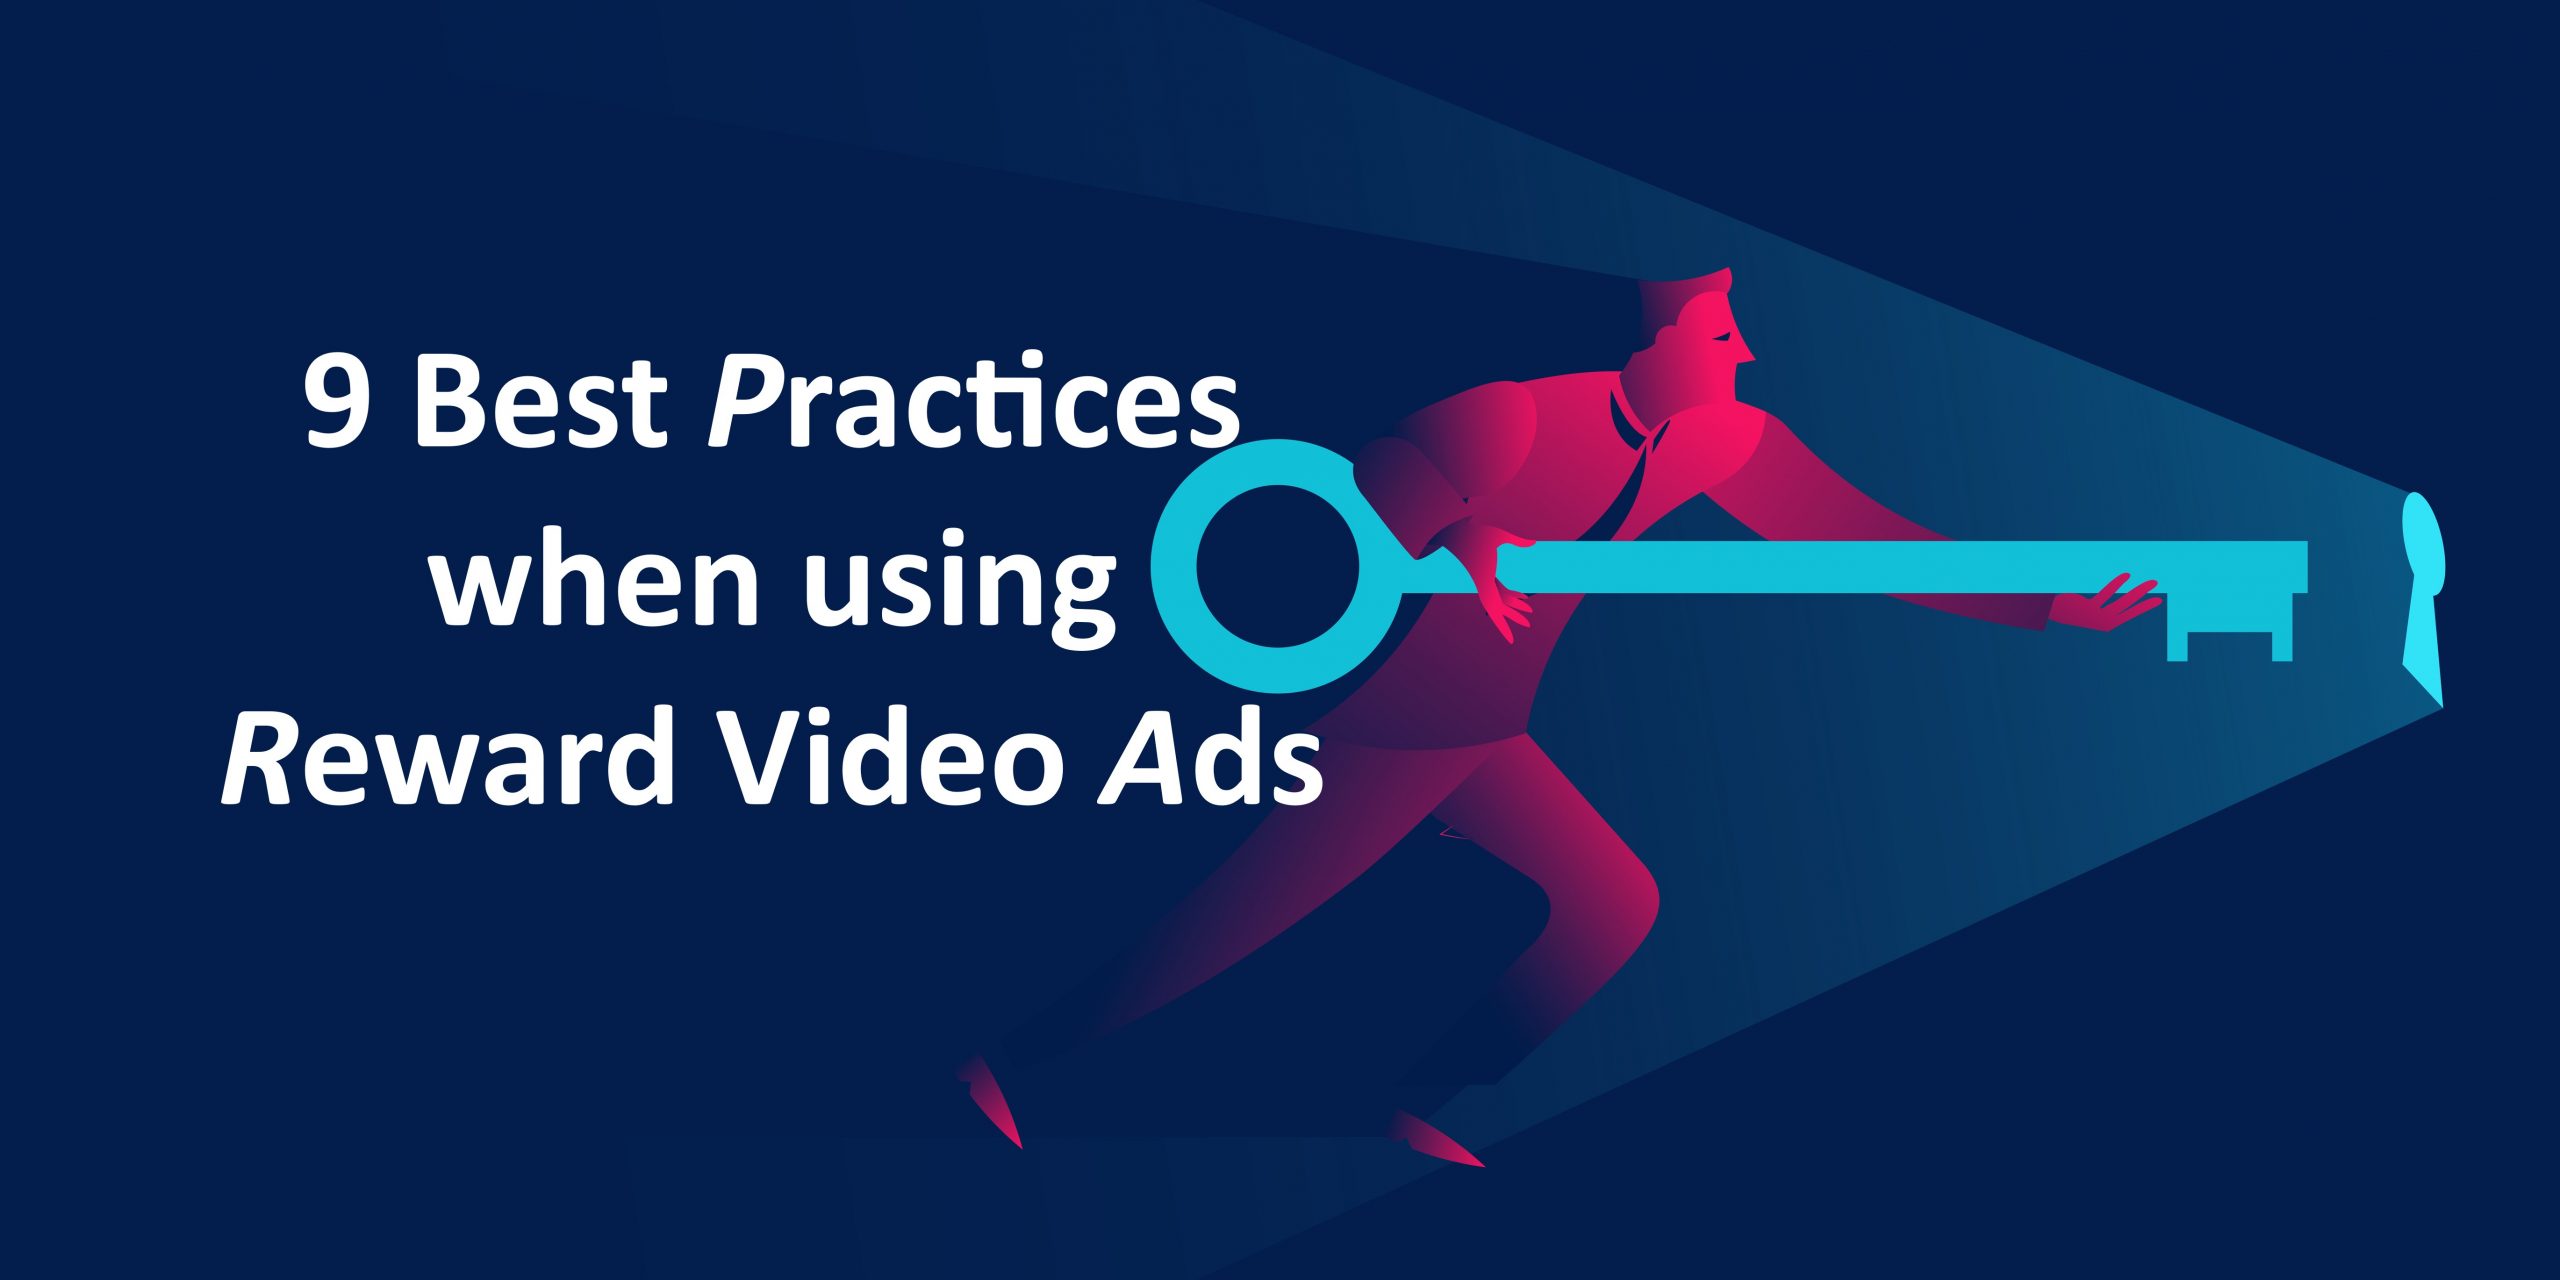 9 Best Practices When Using Reward Video Ads